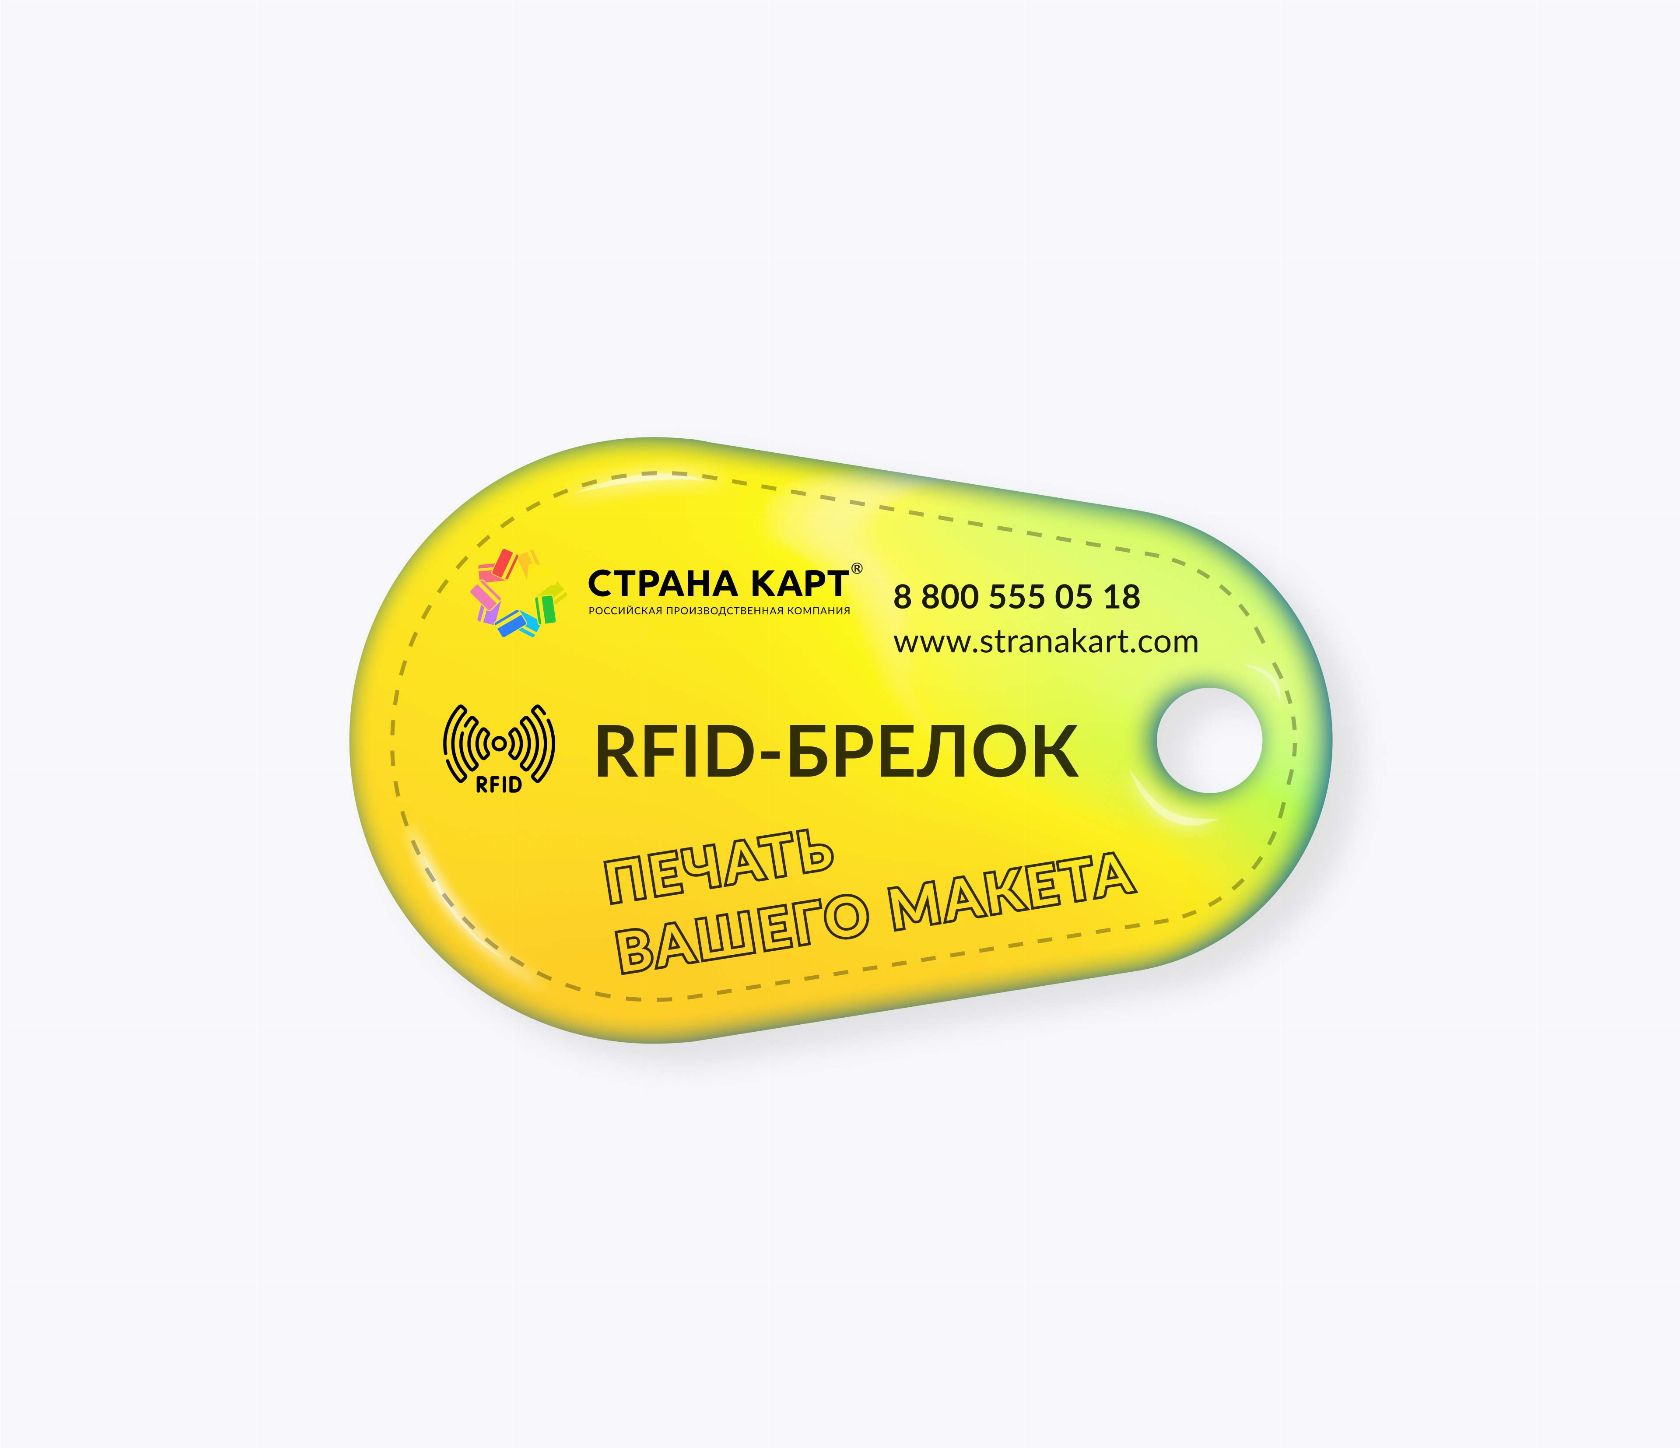 Каплевидные RFID-брелоки NEOKEY® с чипом и вашим дизайном